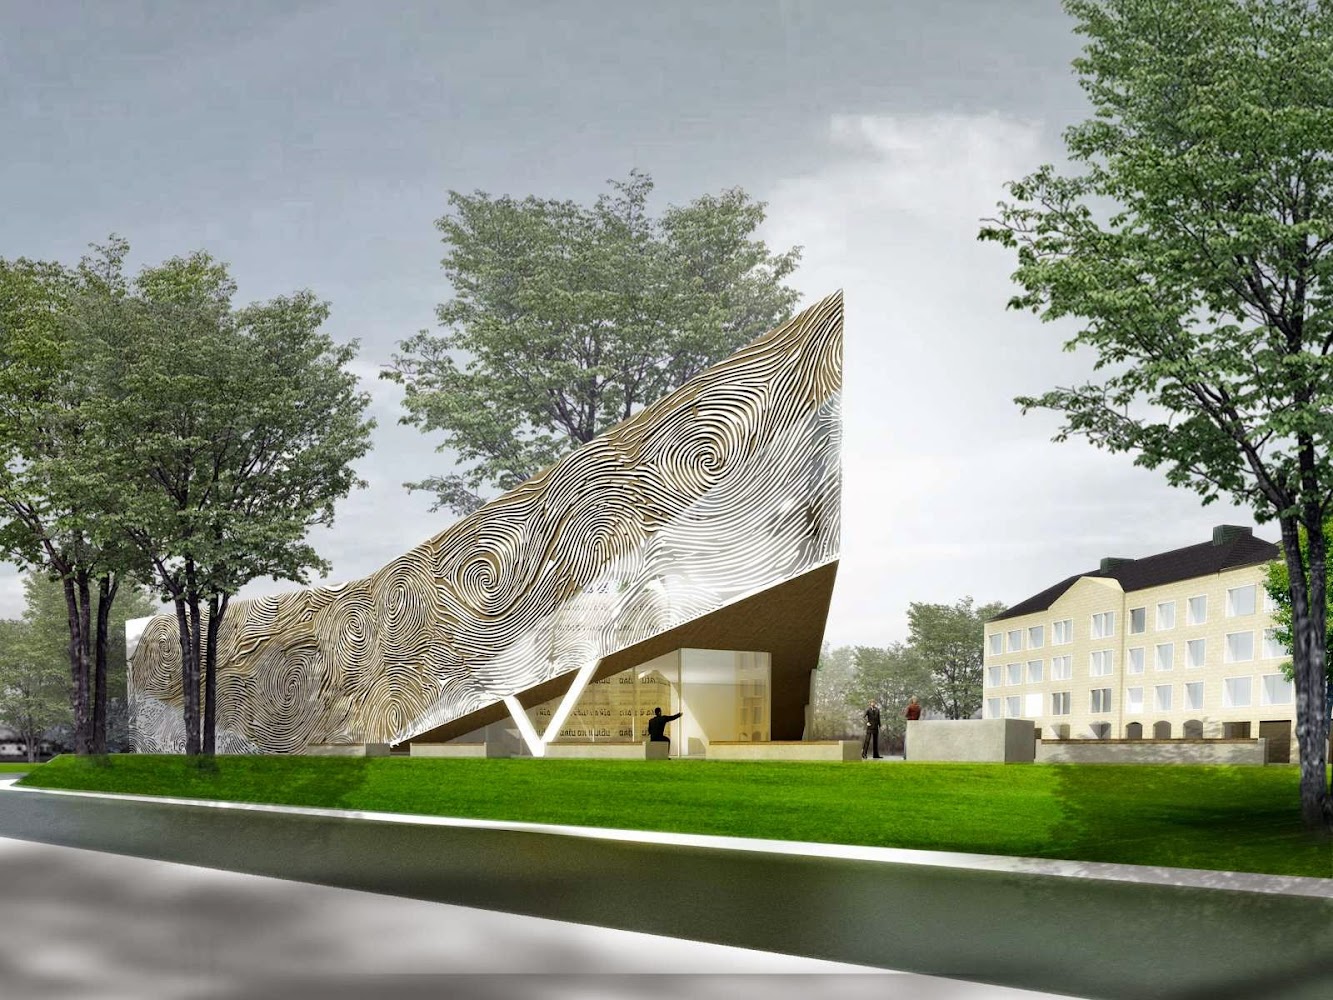 New Synagogue in Koblenz by Herrmanns Architekten